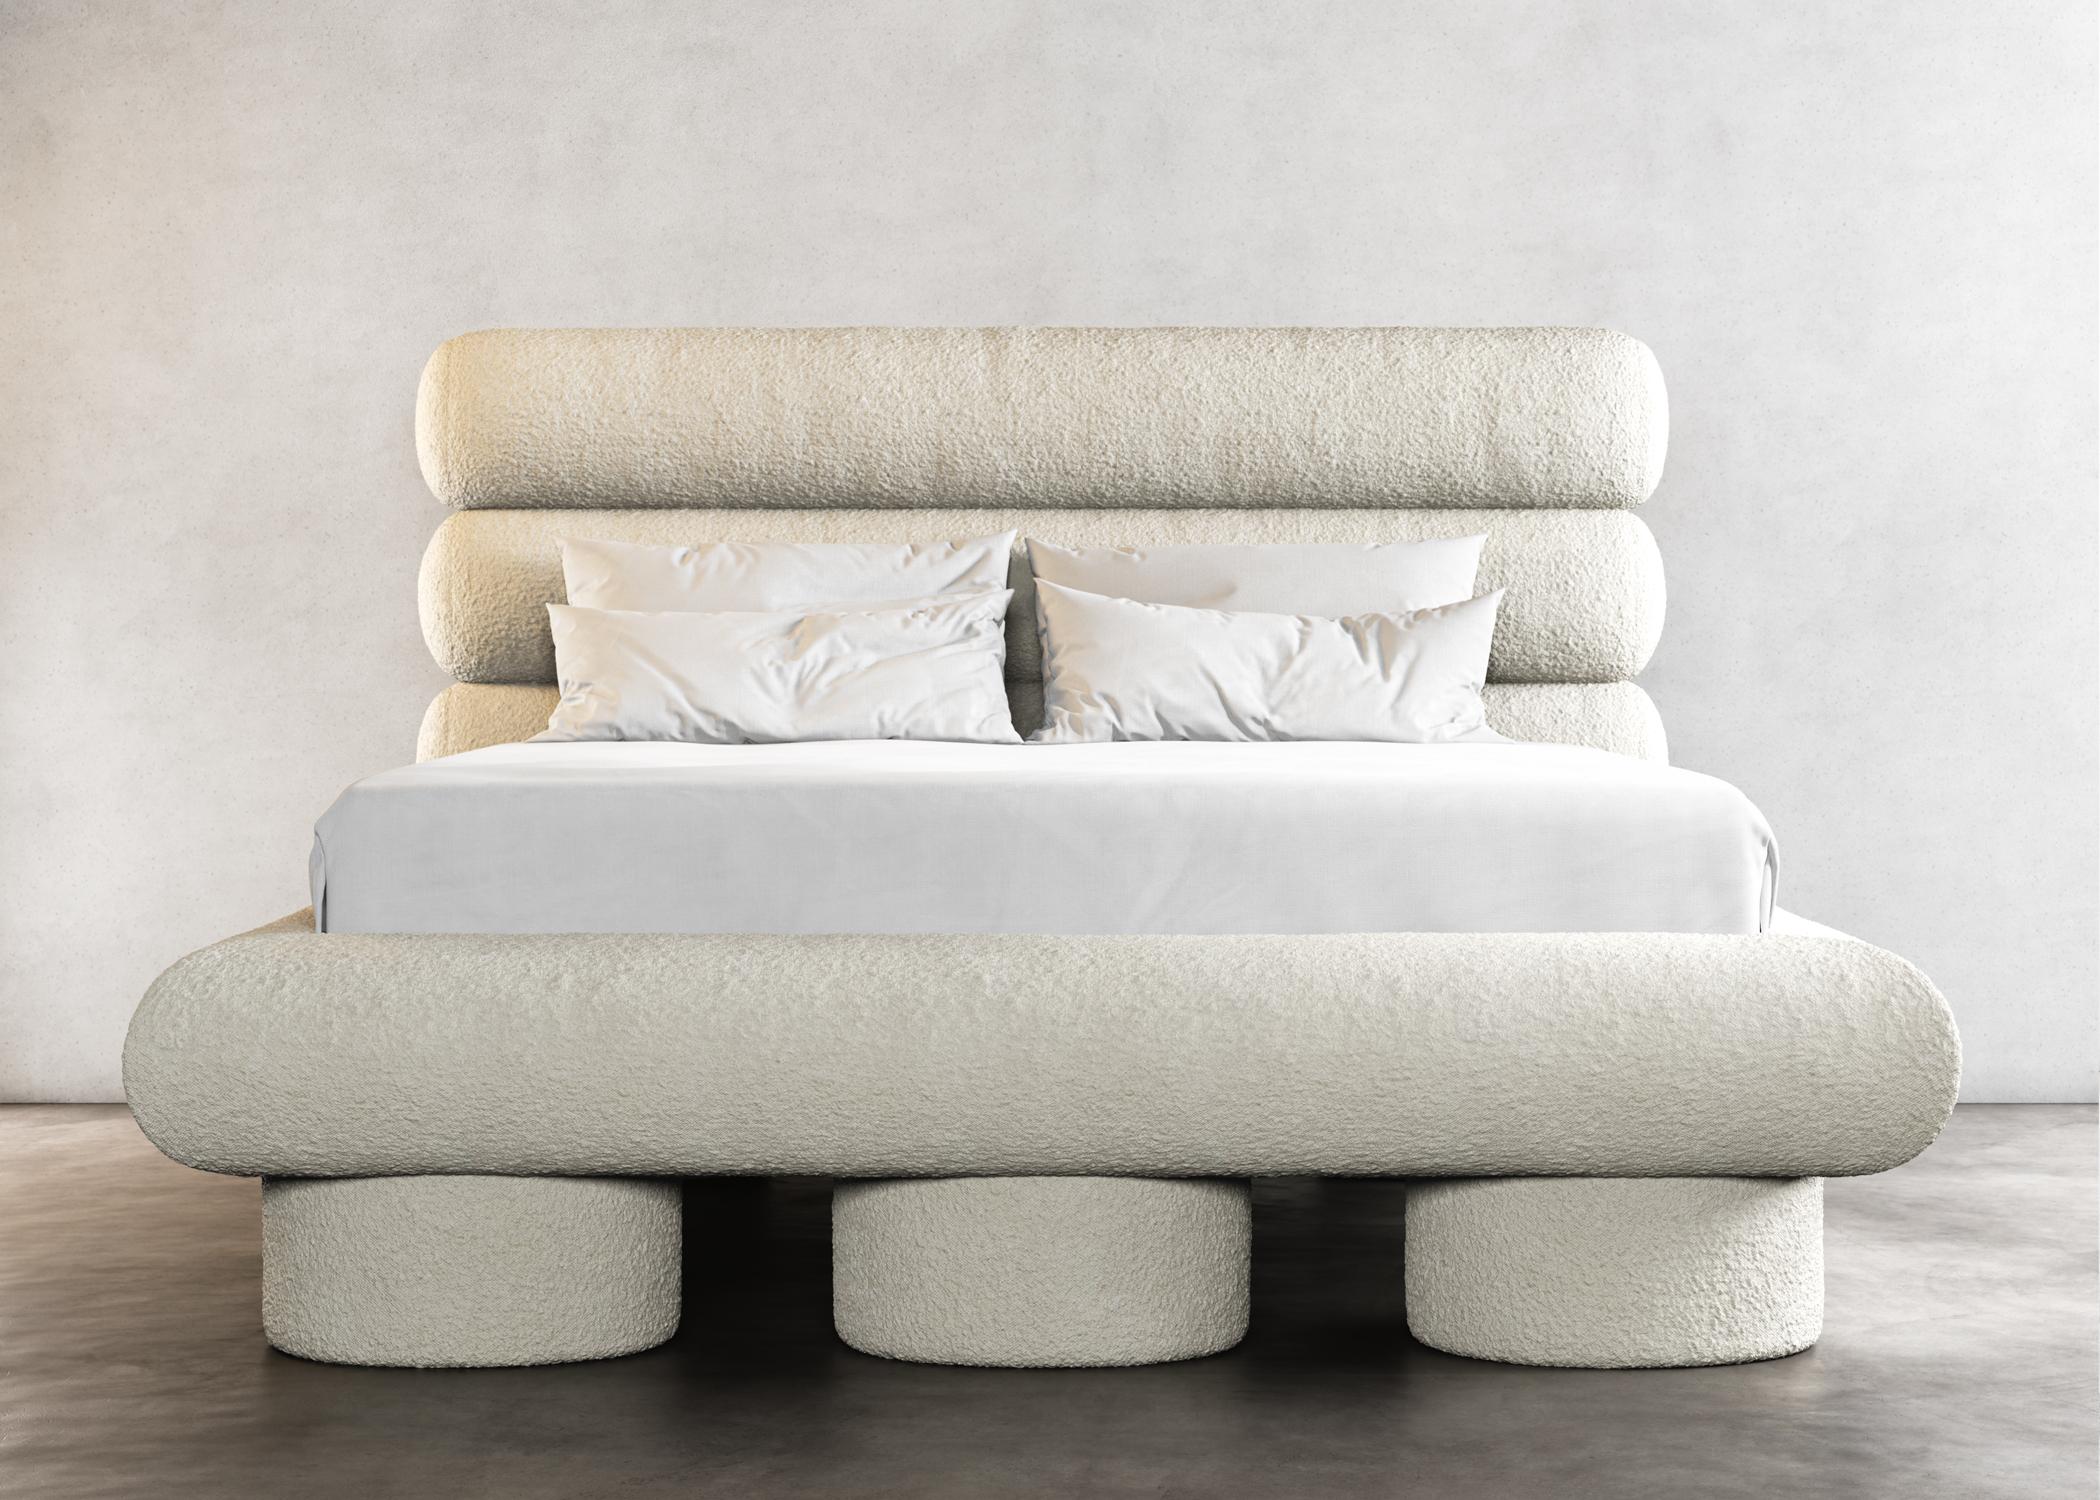 Notre lit moderne Dip est le complément parfait de toute chambre à coucher contemporaine.
Fabriqué à partir de matériaux de haute qualité, ce lit est non seulement élégant mais aussi durable. Le design élégant et minimaliste présente des lignes